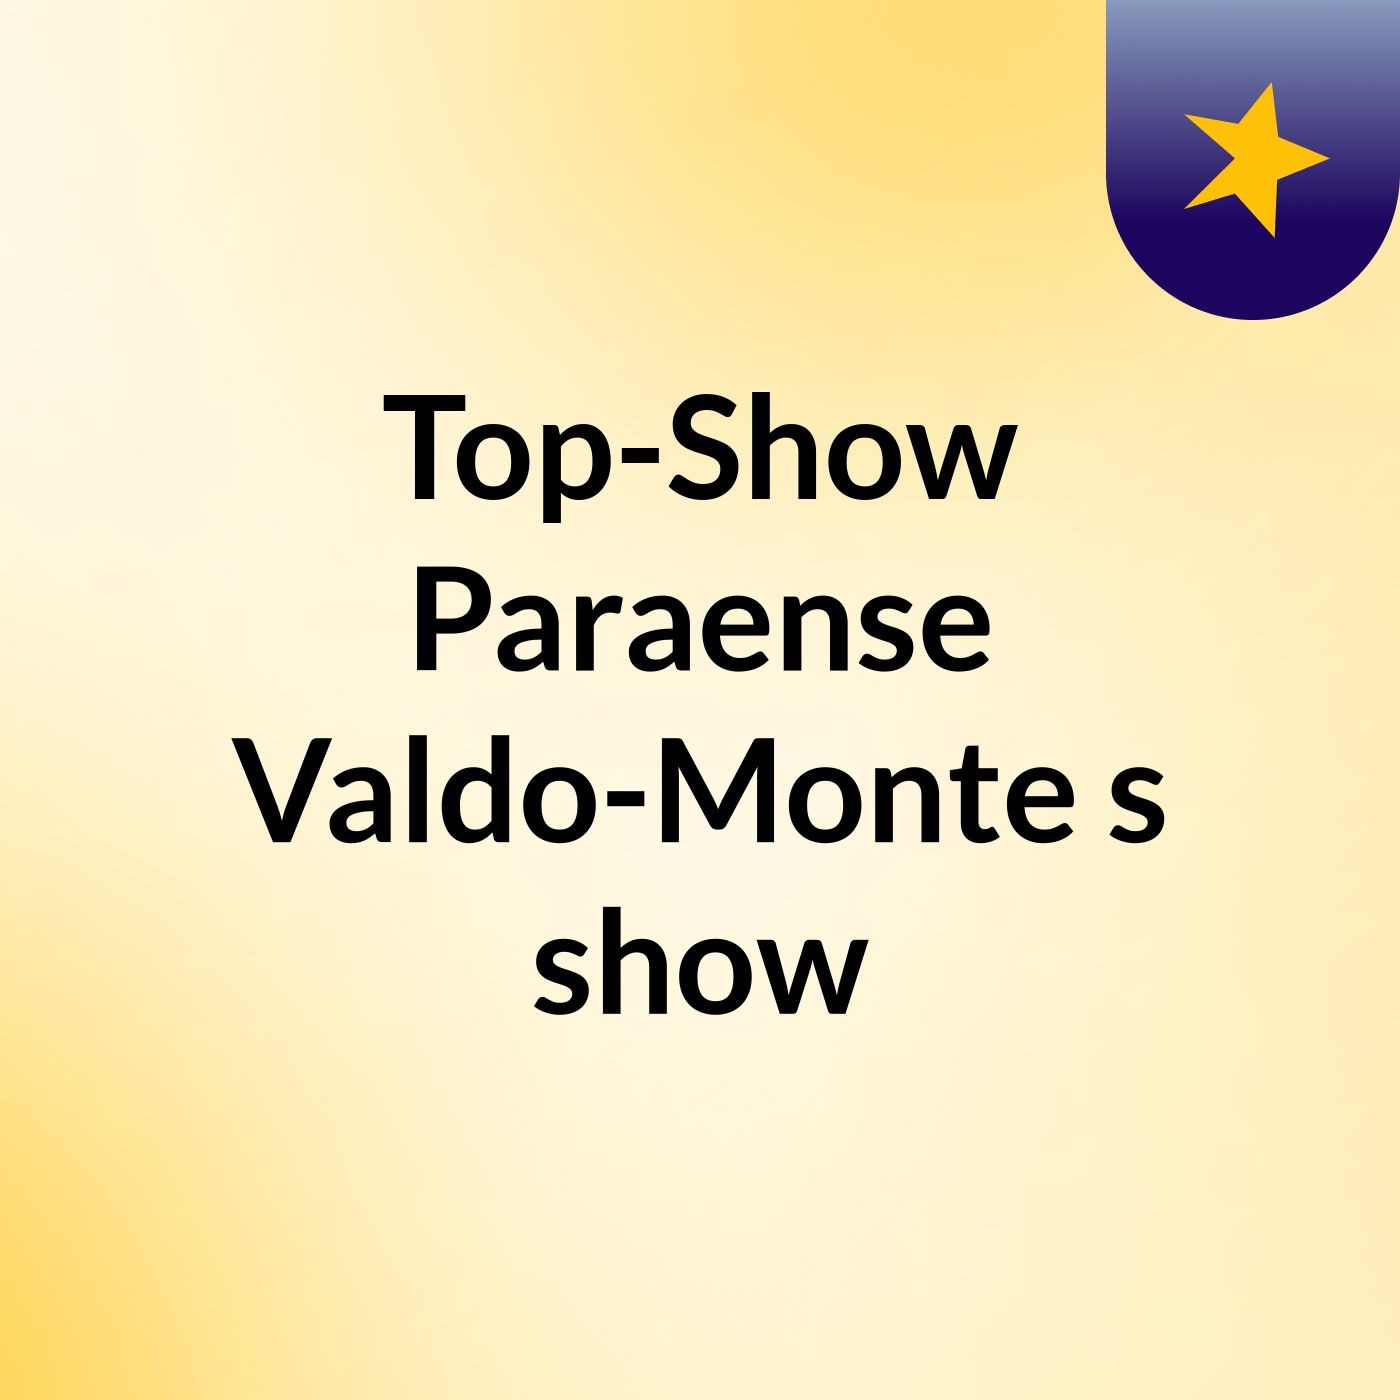 Top-Show Paraense Valdo-Monte 's show